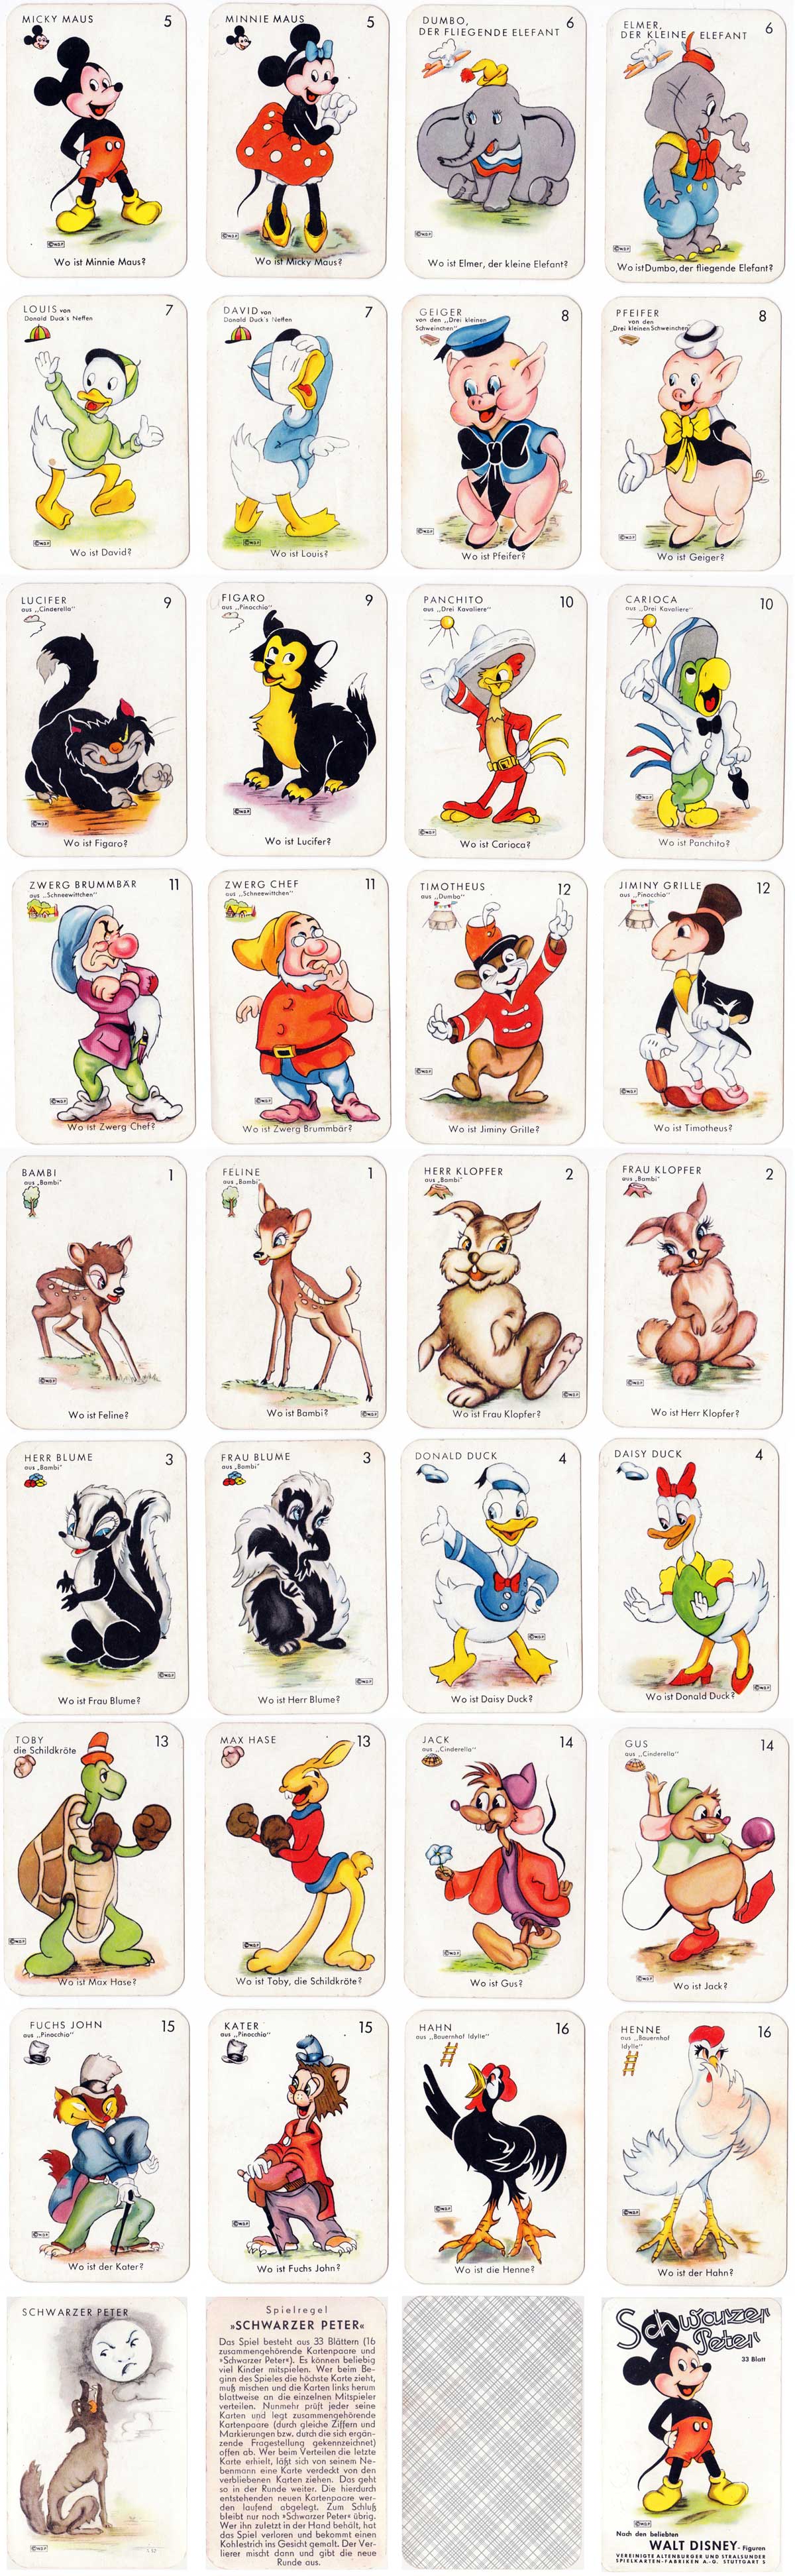 Walt Disney “Schwarzer Peter” game published by Vereinigte Altenburger und Stralsunder Spielkarten-Fabriken A.G., Stuttgart. (c) Walt Disney Productions